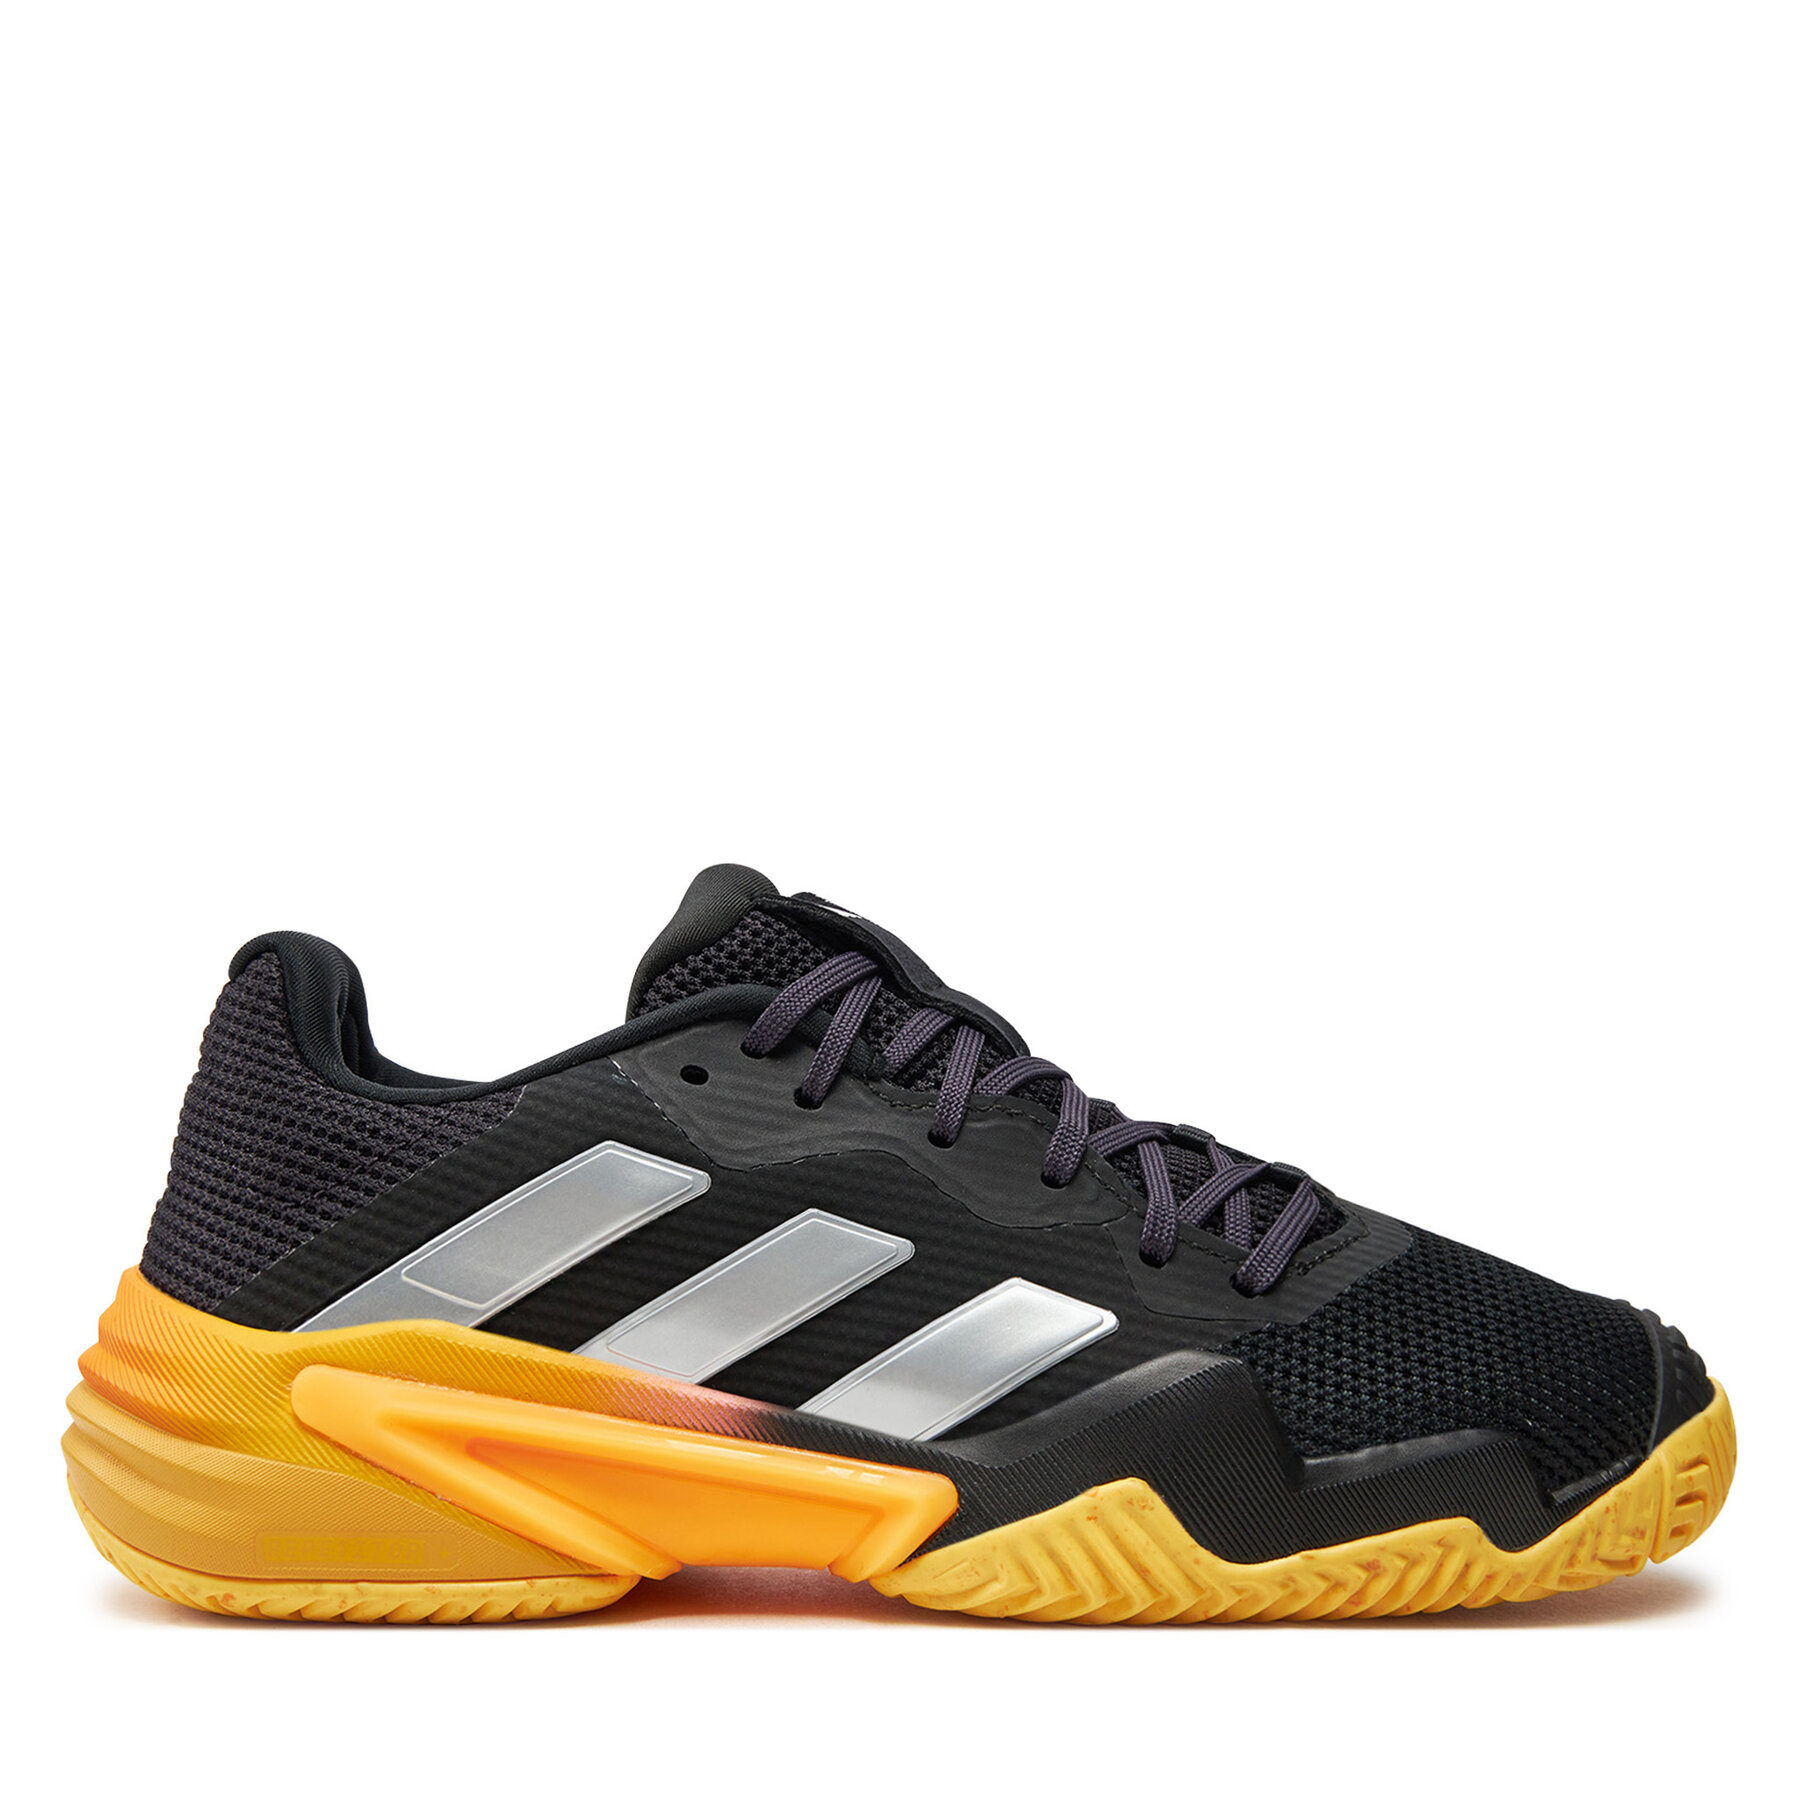 Schuhe adidas Barricade 13 Tennis IF0467 Aurbla/Zeromt/Spark von Adidas